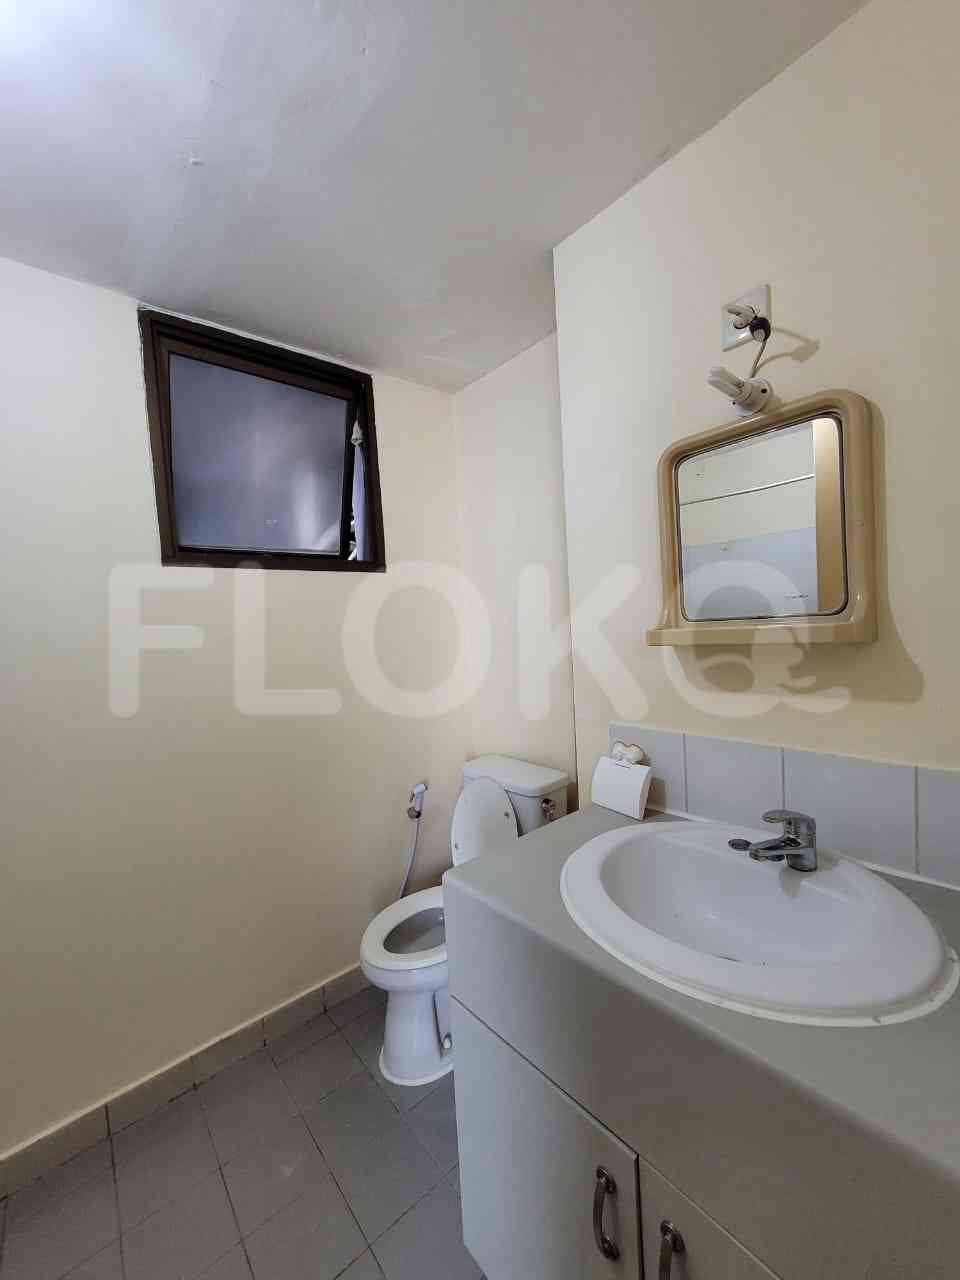 2 Bedroom on 23rd Floor for Rent in Taman Rasuna Apartment - fku9de 2